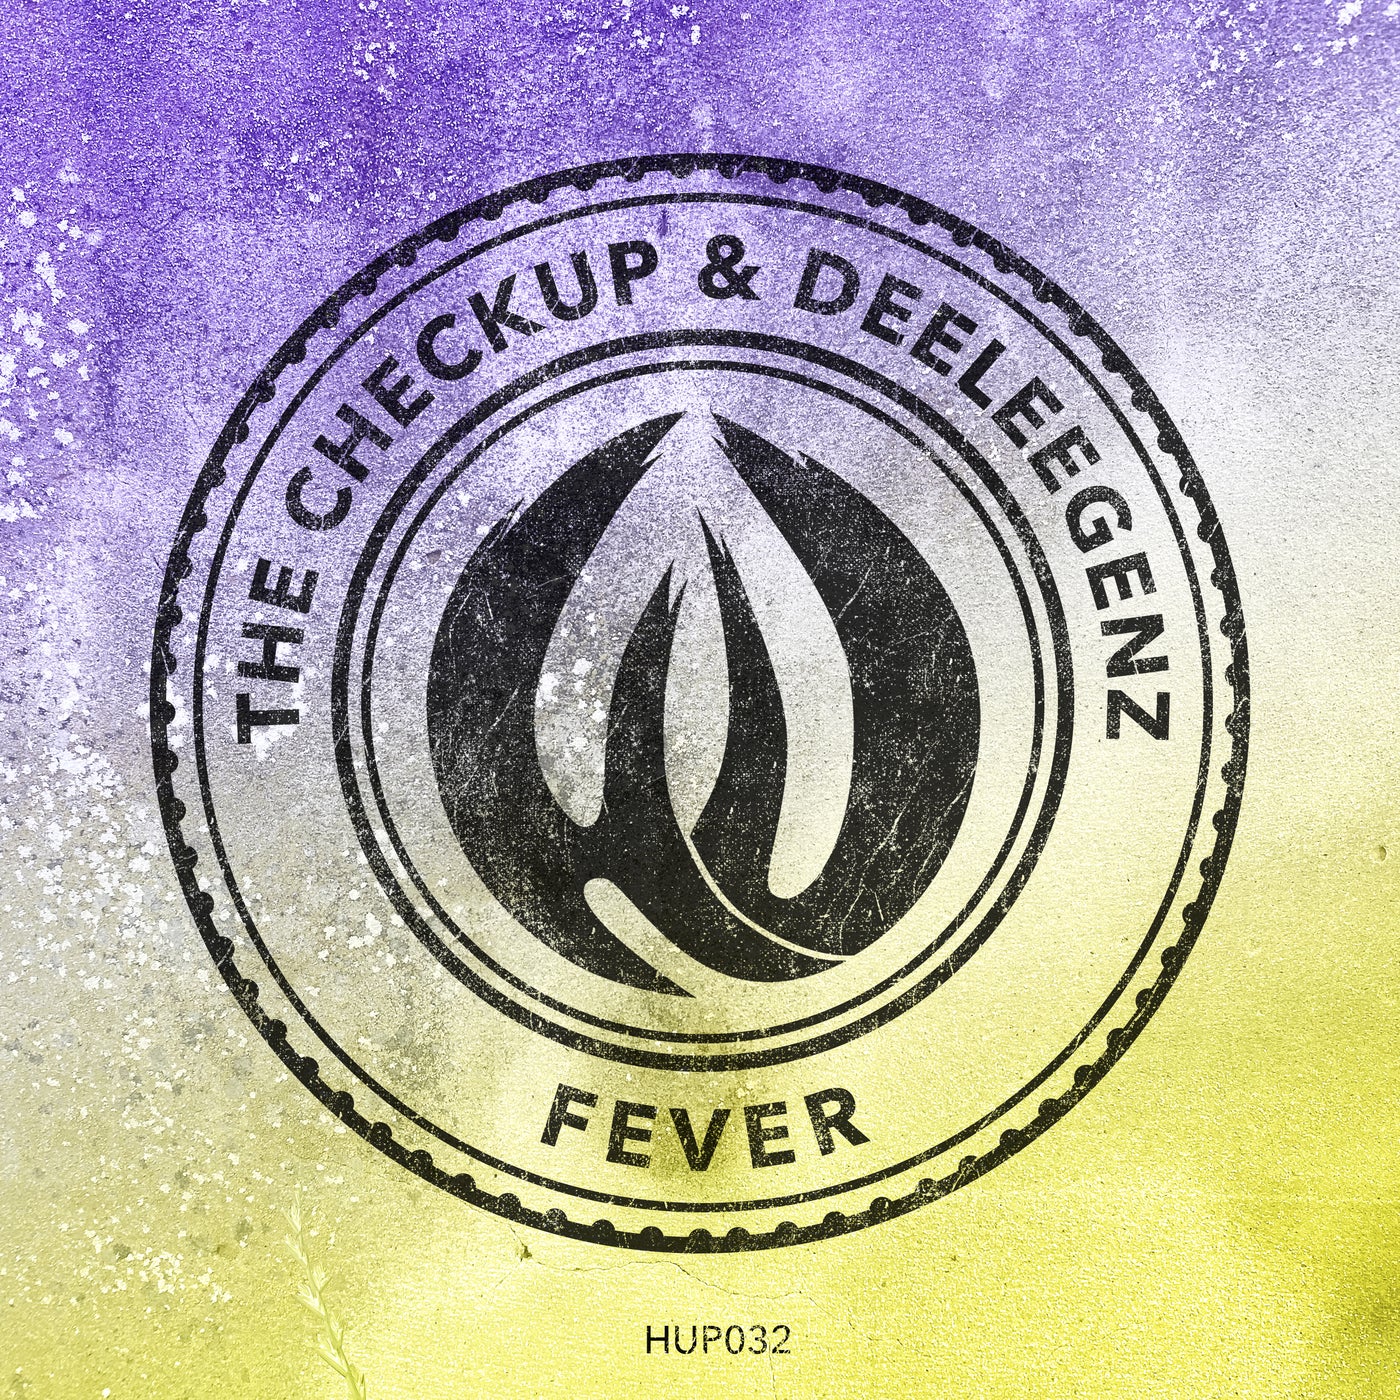 The Checkup, Deeleegenz – Fever [HUP032]